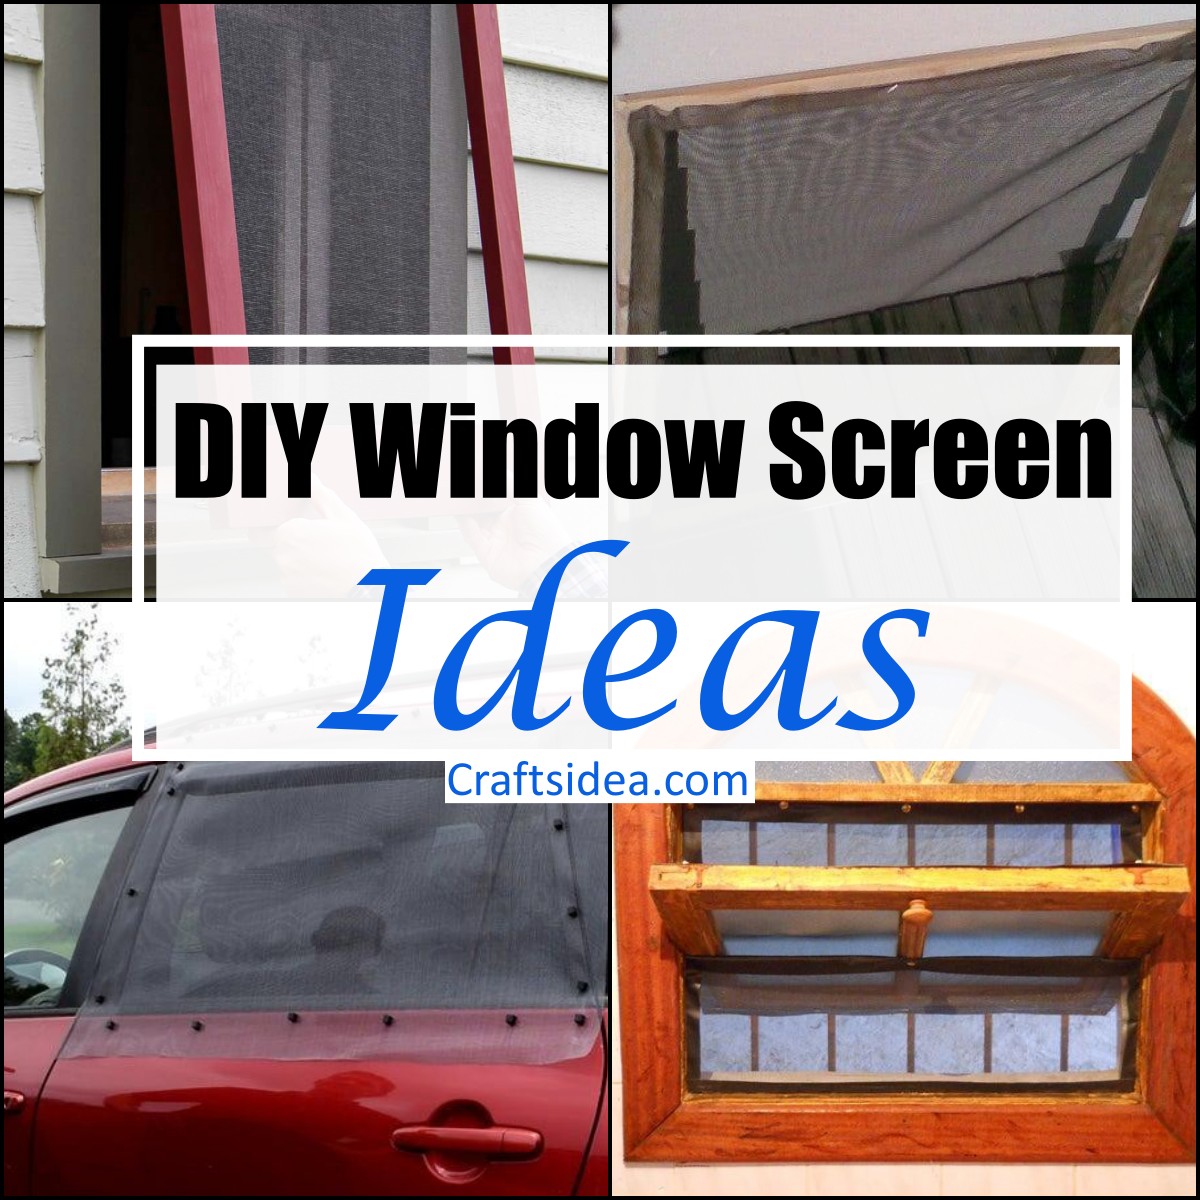 DIY Window Screen Ideas